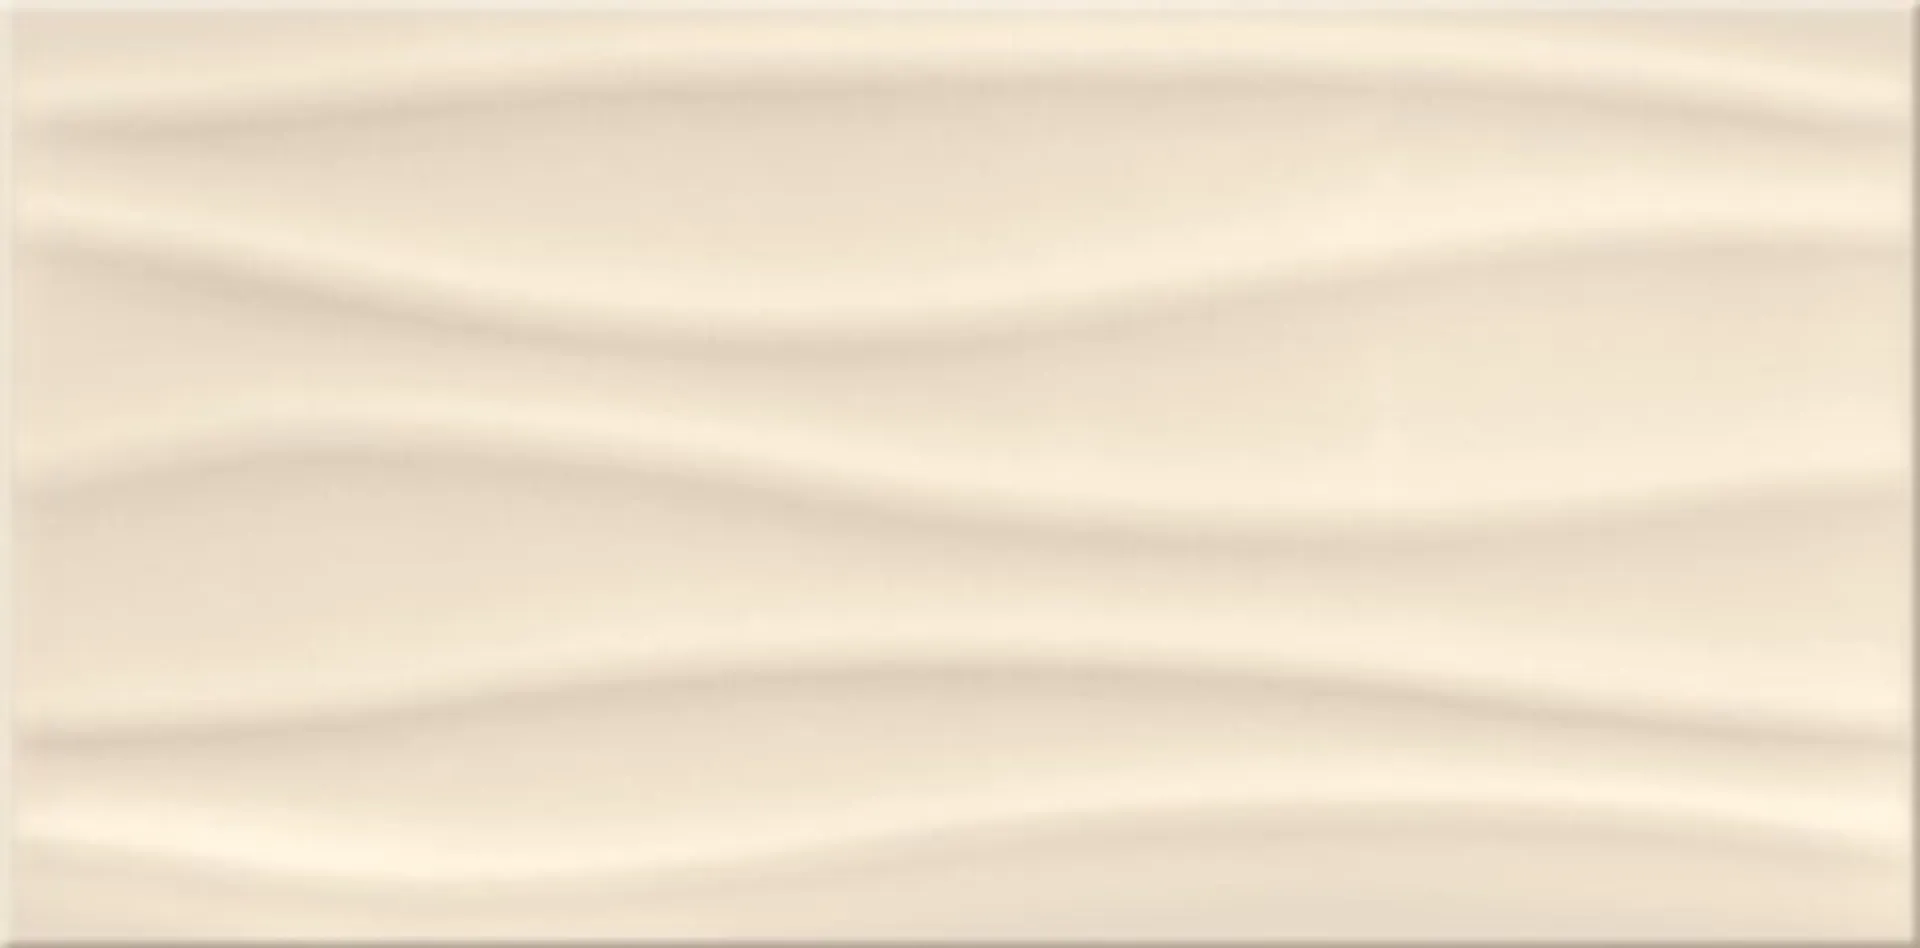 Glazura Basic beige ps500 beige wave structure glossy 29,7x60 Cersanit